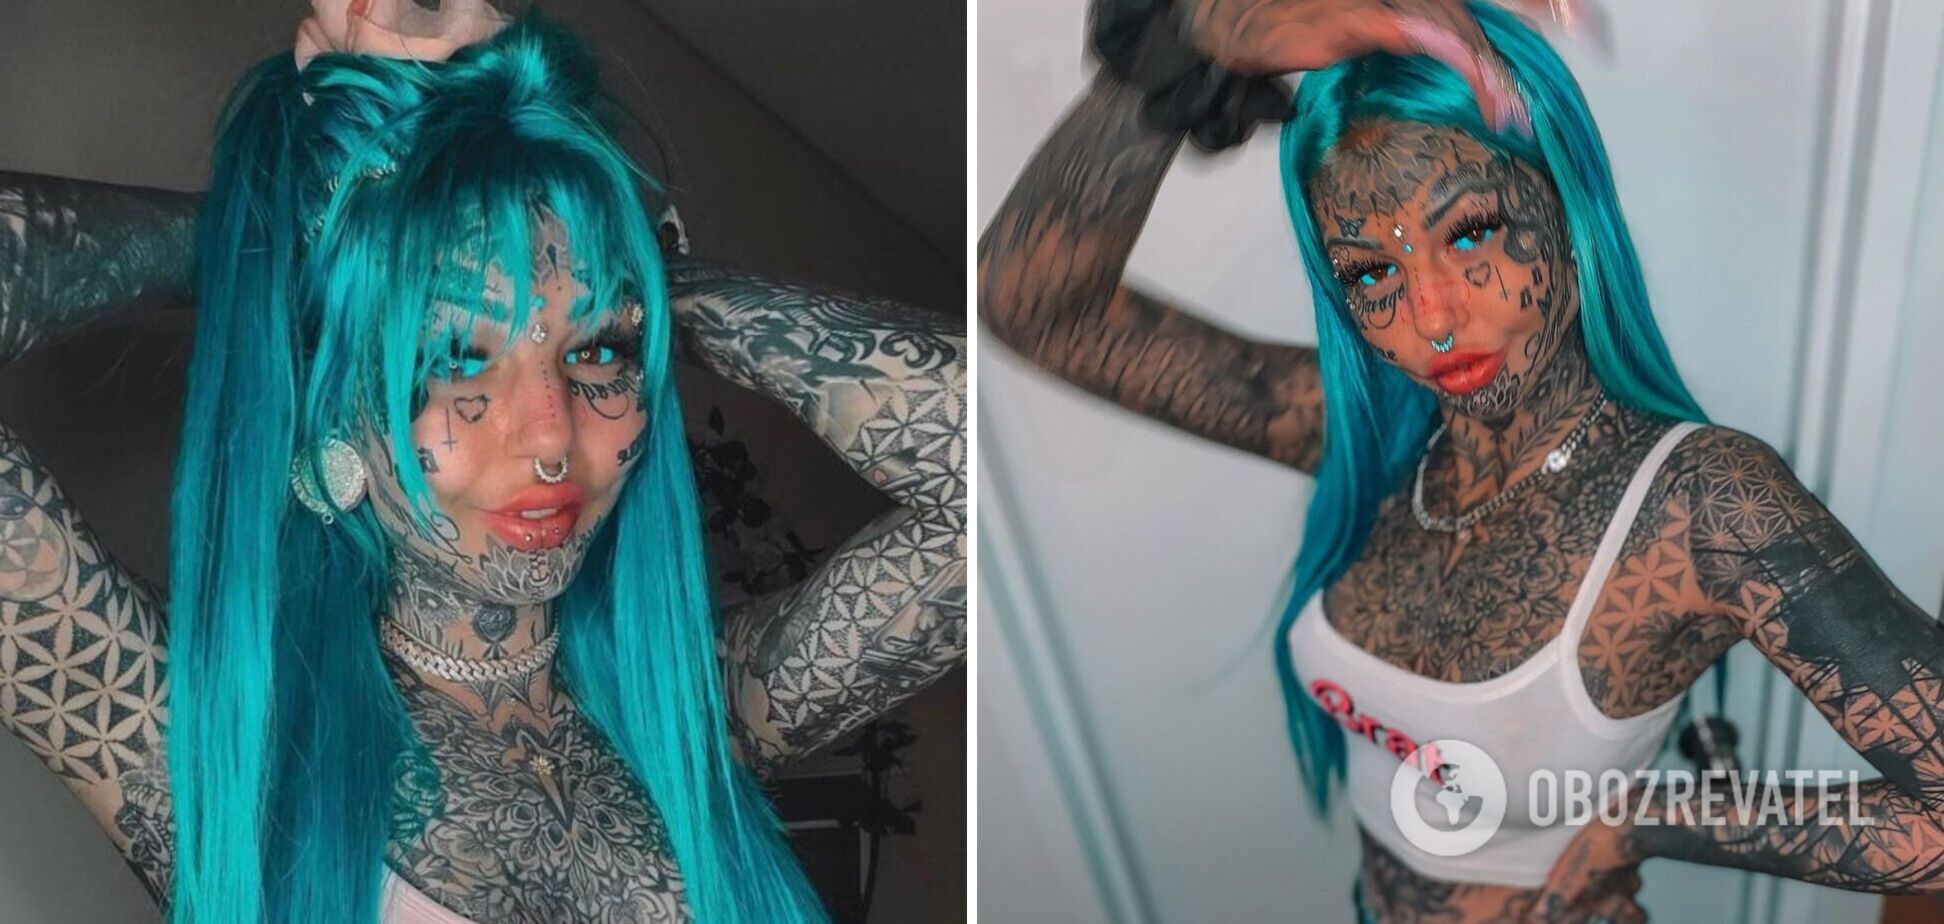 Модель с 600 тату и синими волосами рассказала, чем зарабатывает на жизнь